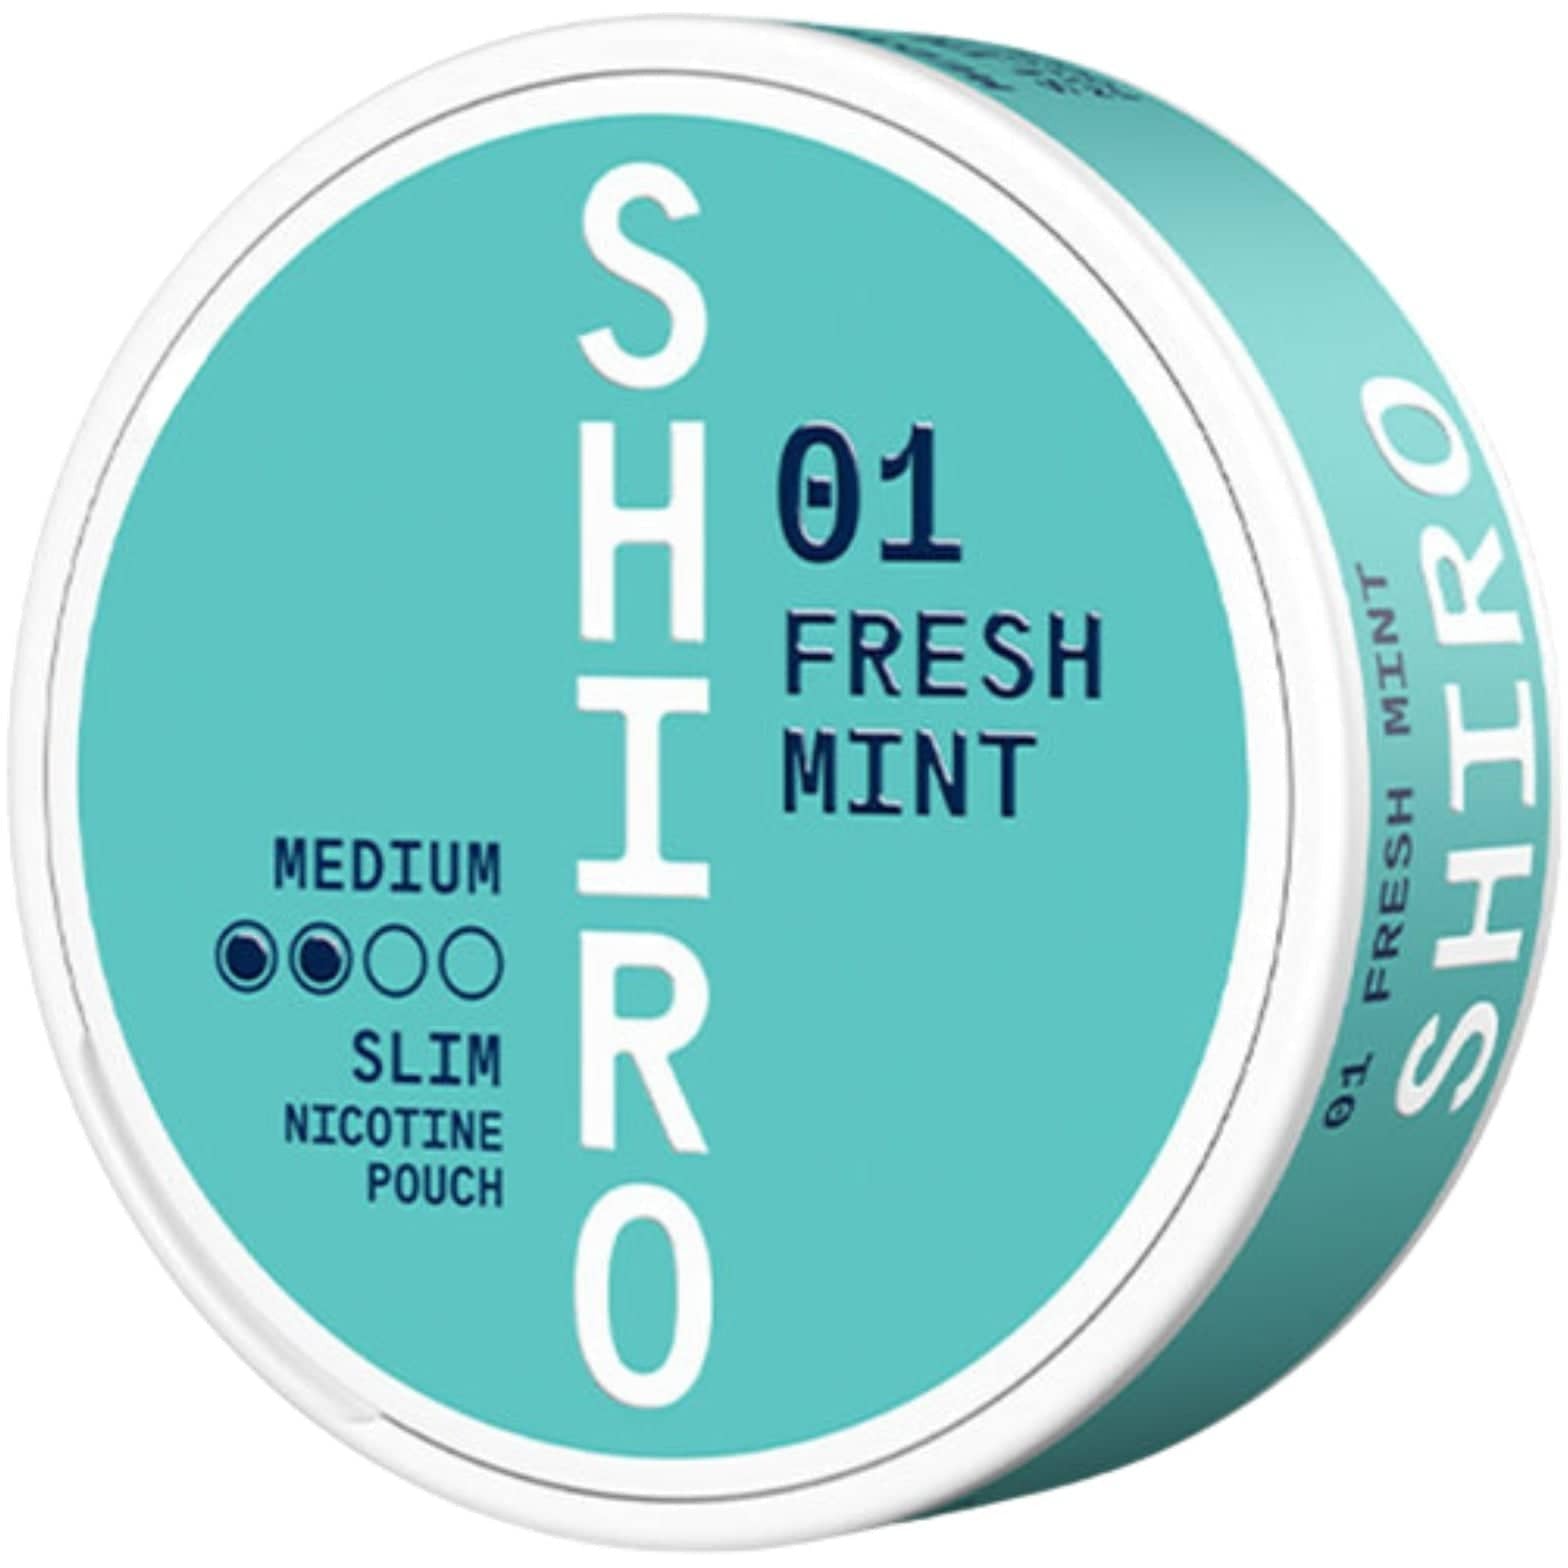 SHIRO FRESH MINT 01 - Nammi.net